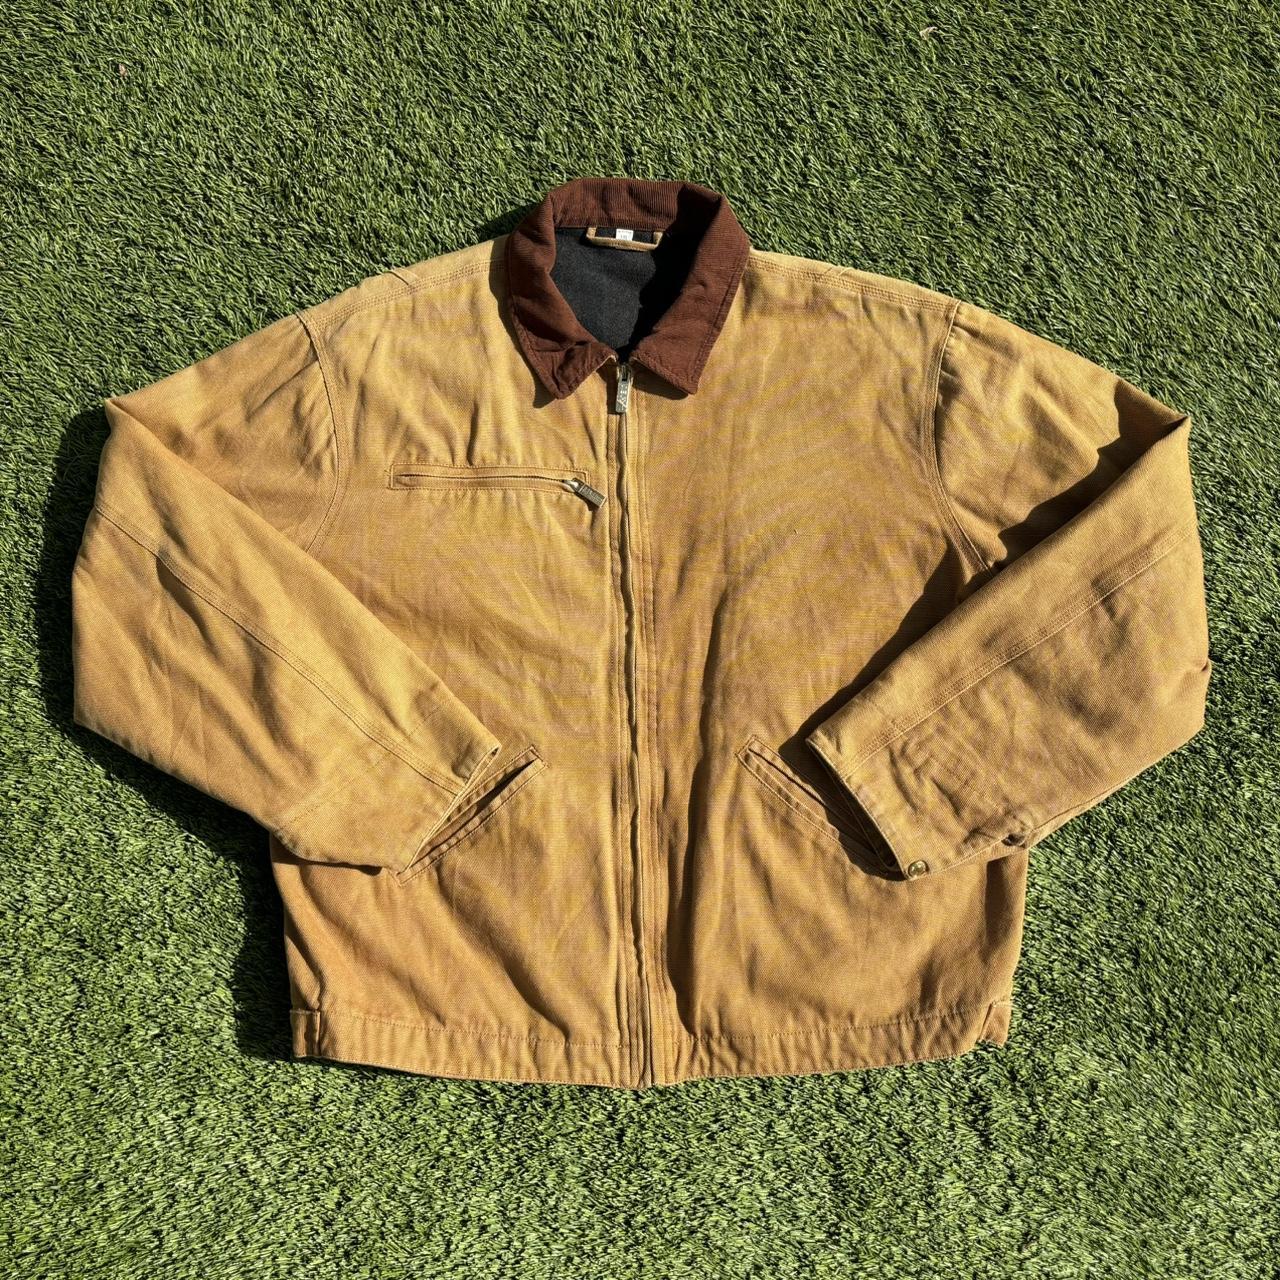 Faded vintage detroit carhartt style jacket Great... - Depop